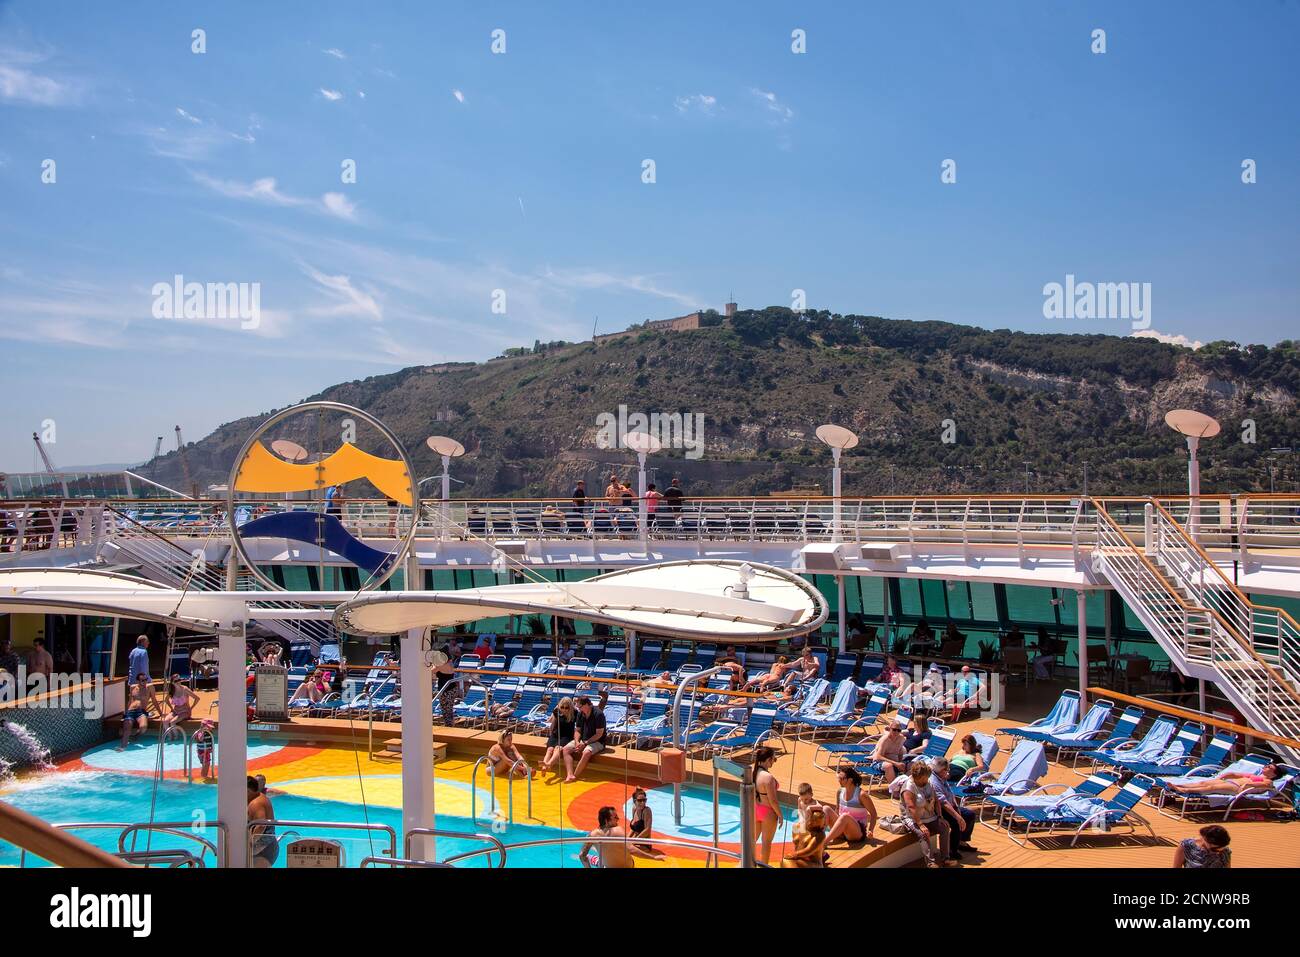 Barcellona, Spagna - 7 giugno 2016: Il Lido e il ponte della piscina a bordo della nave da crociera Brilliance of the Seas, parte della linea di crociera Royal Caribbean. Foto Stock